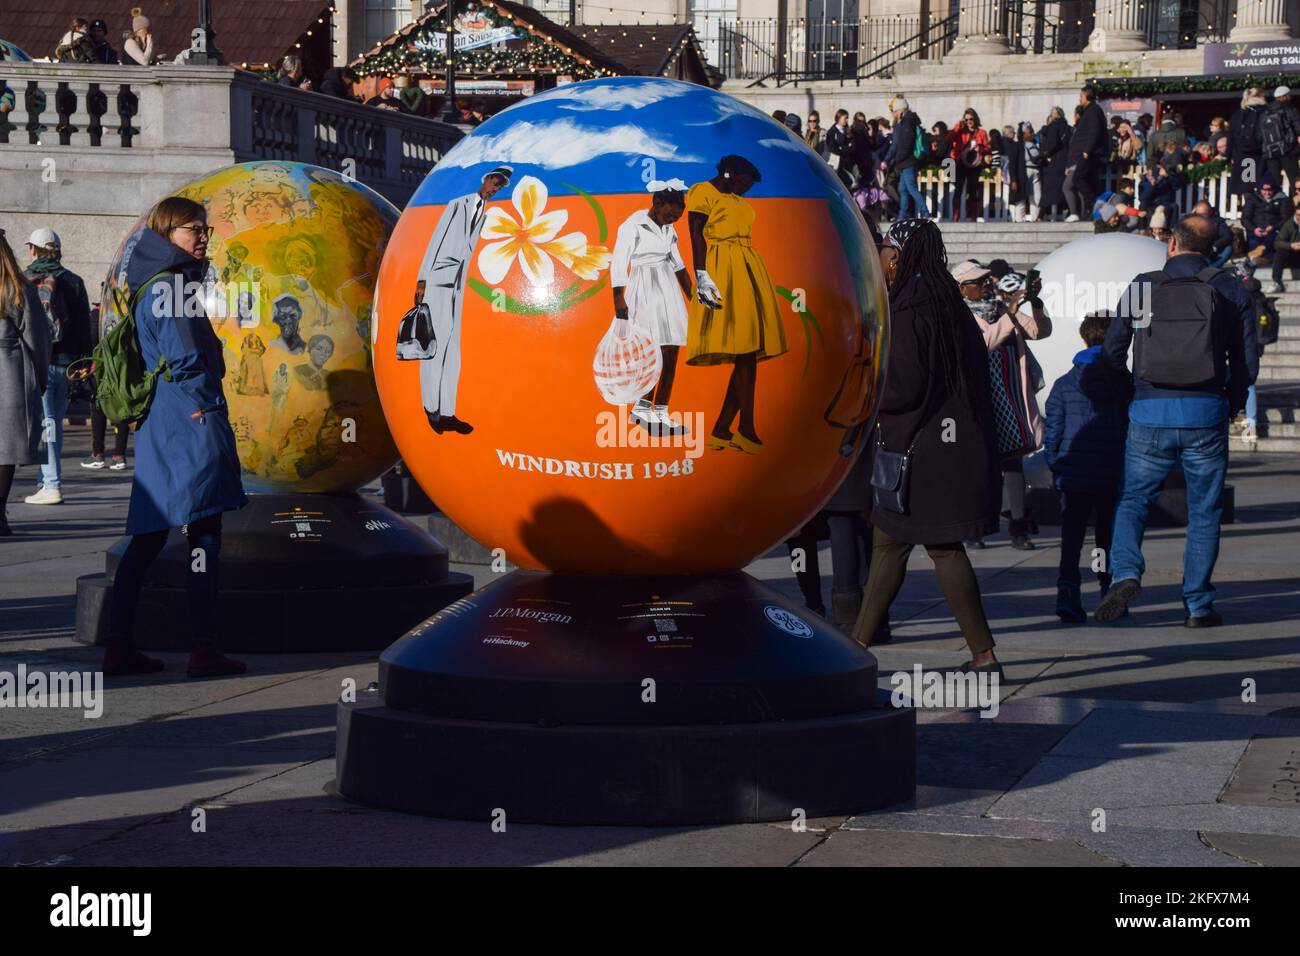 Un globe dédié à la génération Windrush sur Trafalgar Square, Londres. 96 globes créés par différents artistes ont été exposés à Trafalgar Square dans le cadre du projet « le monde repensé », qui explore l’histoire du commerce transatlantique des Africains enrasés et son impact. Banque D'Images